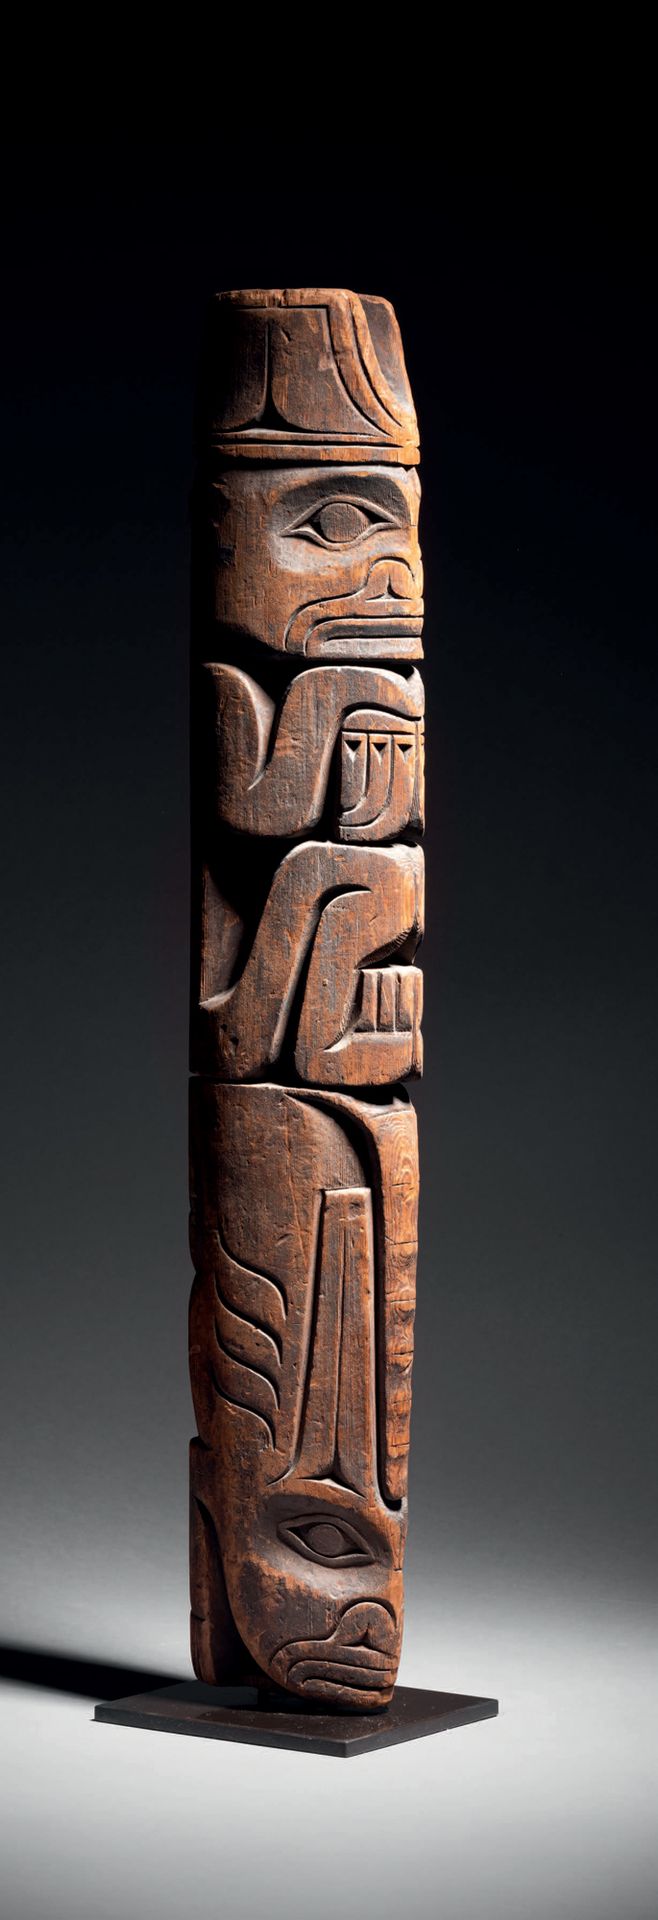 Null 图腾柱，加拿大不列颠哥伦比亚省
20世纪初
木雕
高57厘米
图腾柱模型，加拿大西北海岸
高22.5英寸
出处：
- 法国私人收藏
这里展示的雕塑是图&hellip;